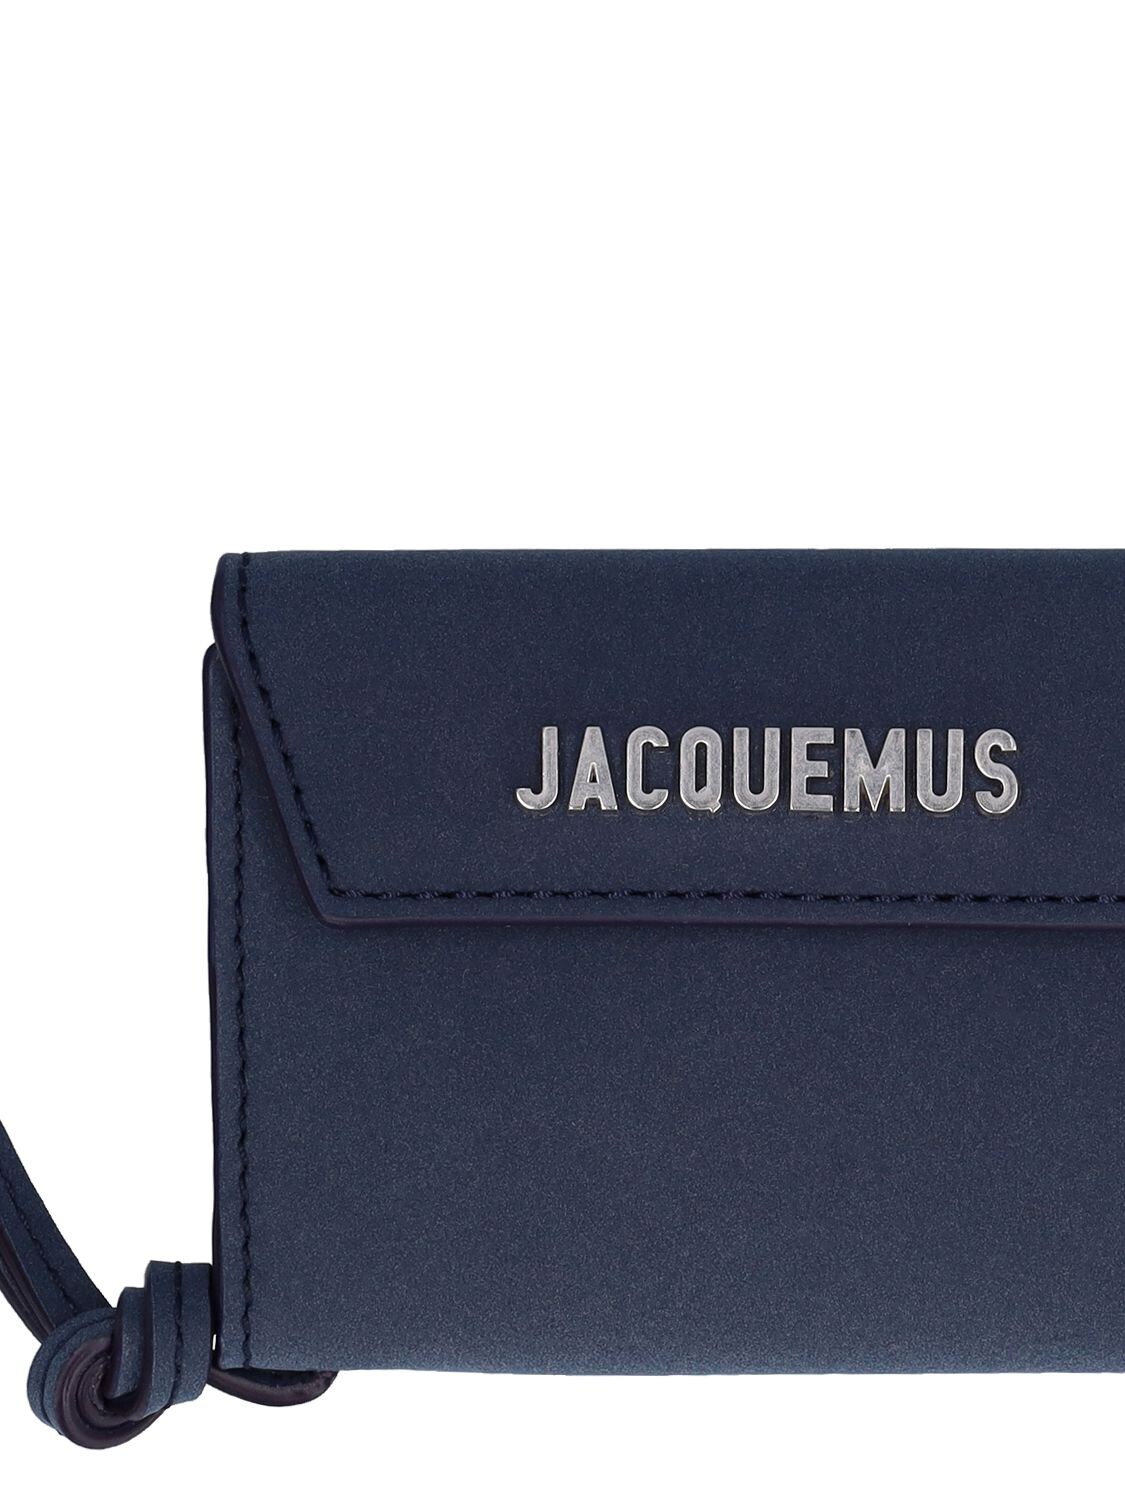 Jacquemus Le porte Jacquemus Envelope Wallet Navy